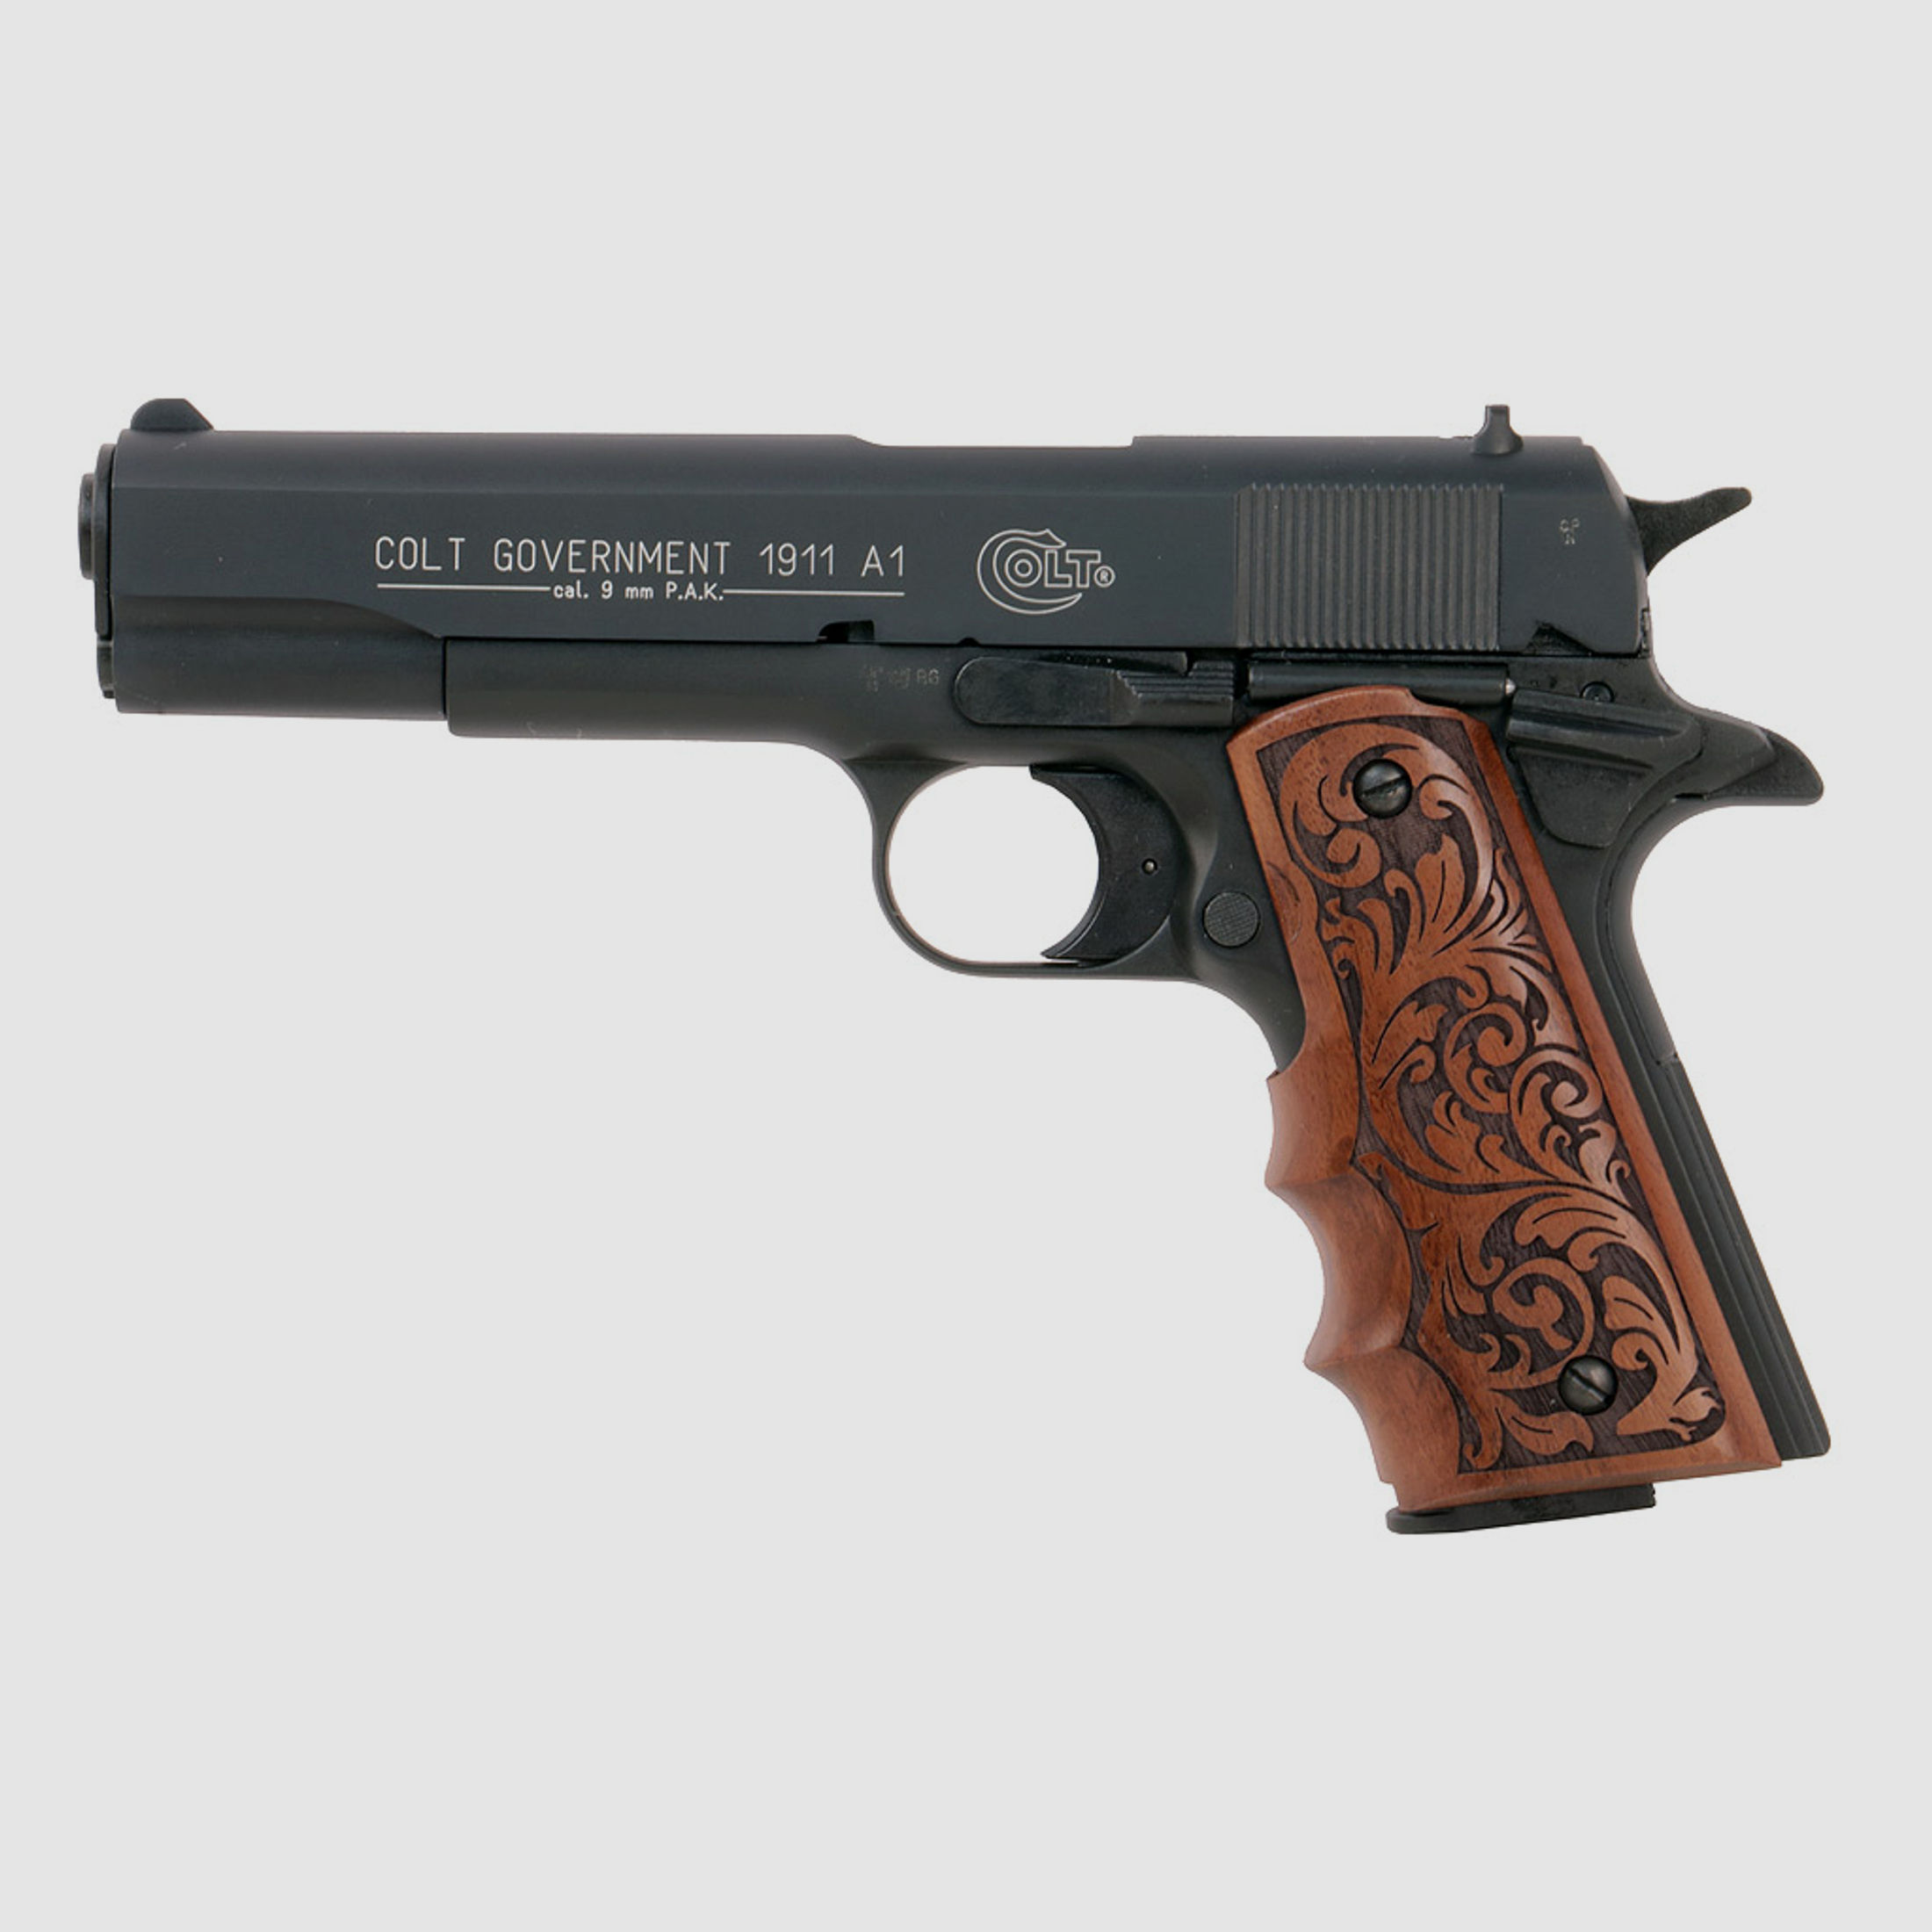 Combat Holzgriffschalen fĂĽr Schreckschuss-, Gas-, Signalpistole Colt 1911 florales Muster